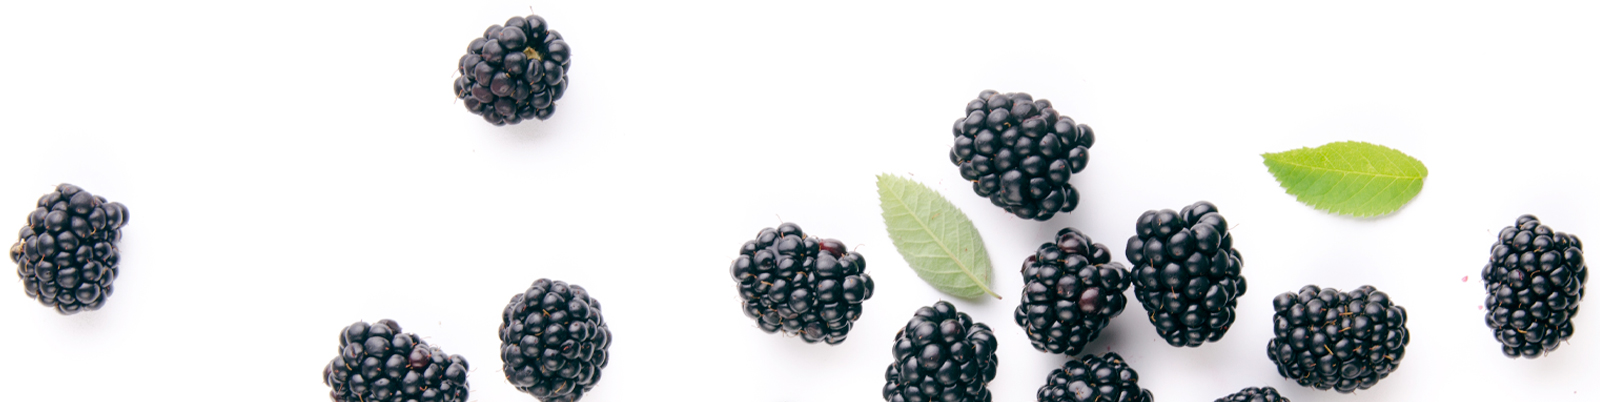 blackberries_isolated-bottom